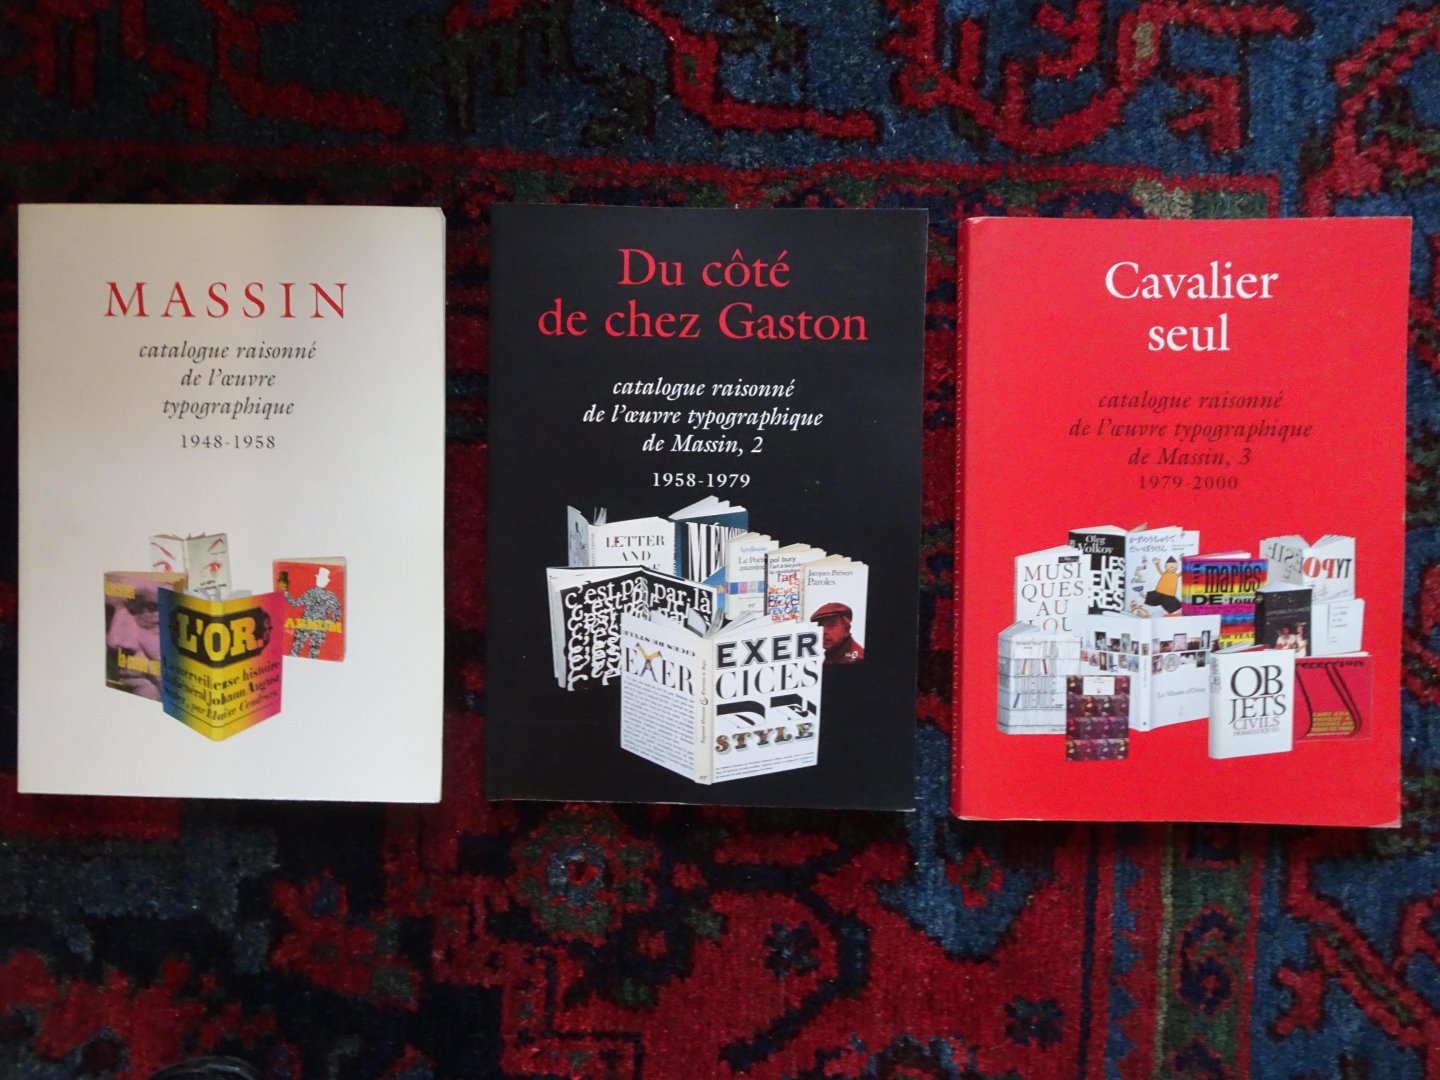  - MASSIN Catalogue raisonné de l'oeuvre typographique 1948-1958. In three volumes.